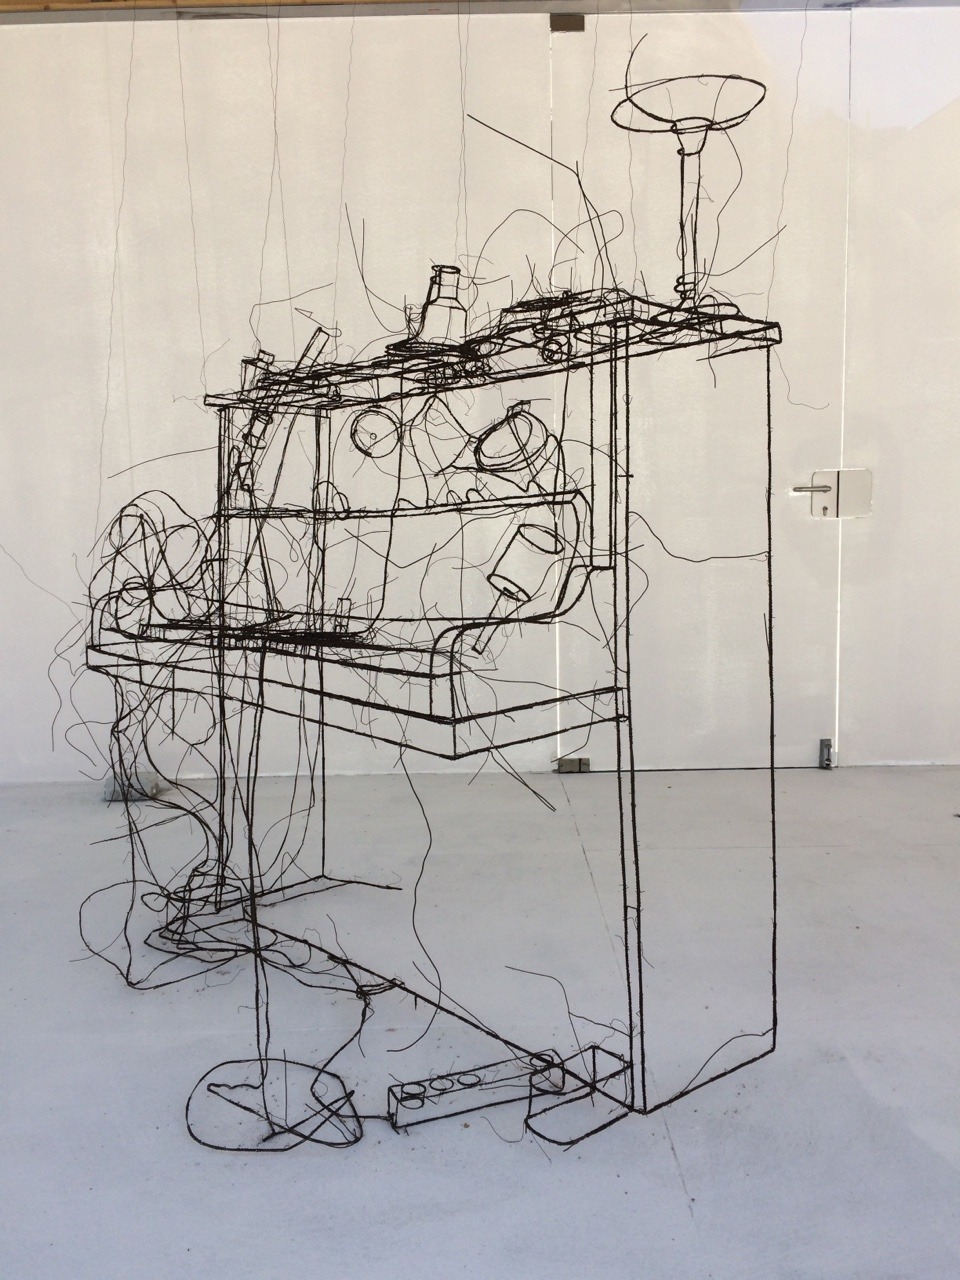 ein-bleistift-und-radiergummi:
“Fritz Panzer Wire Sculpture ‘Piano.’
”